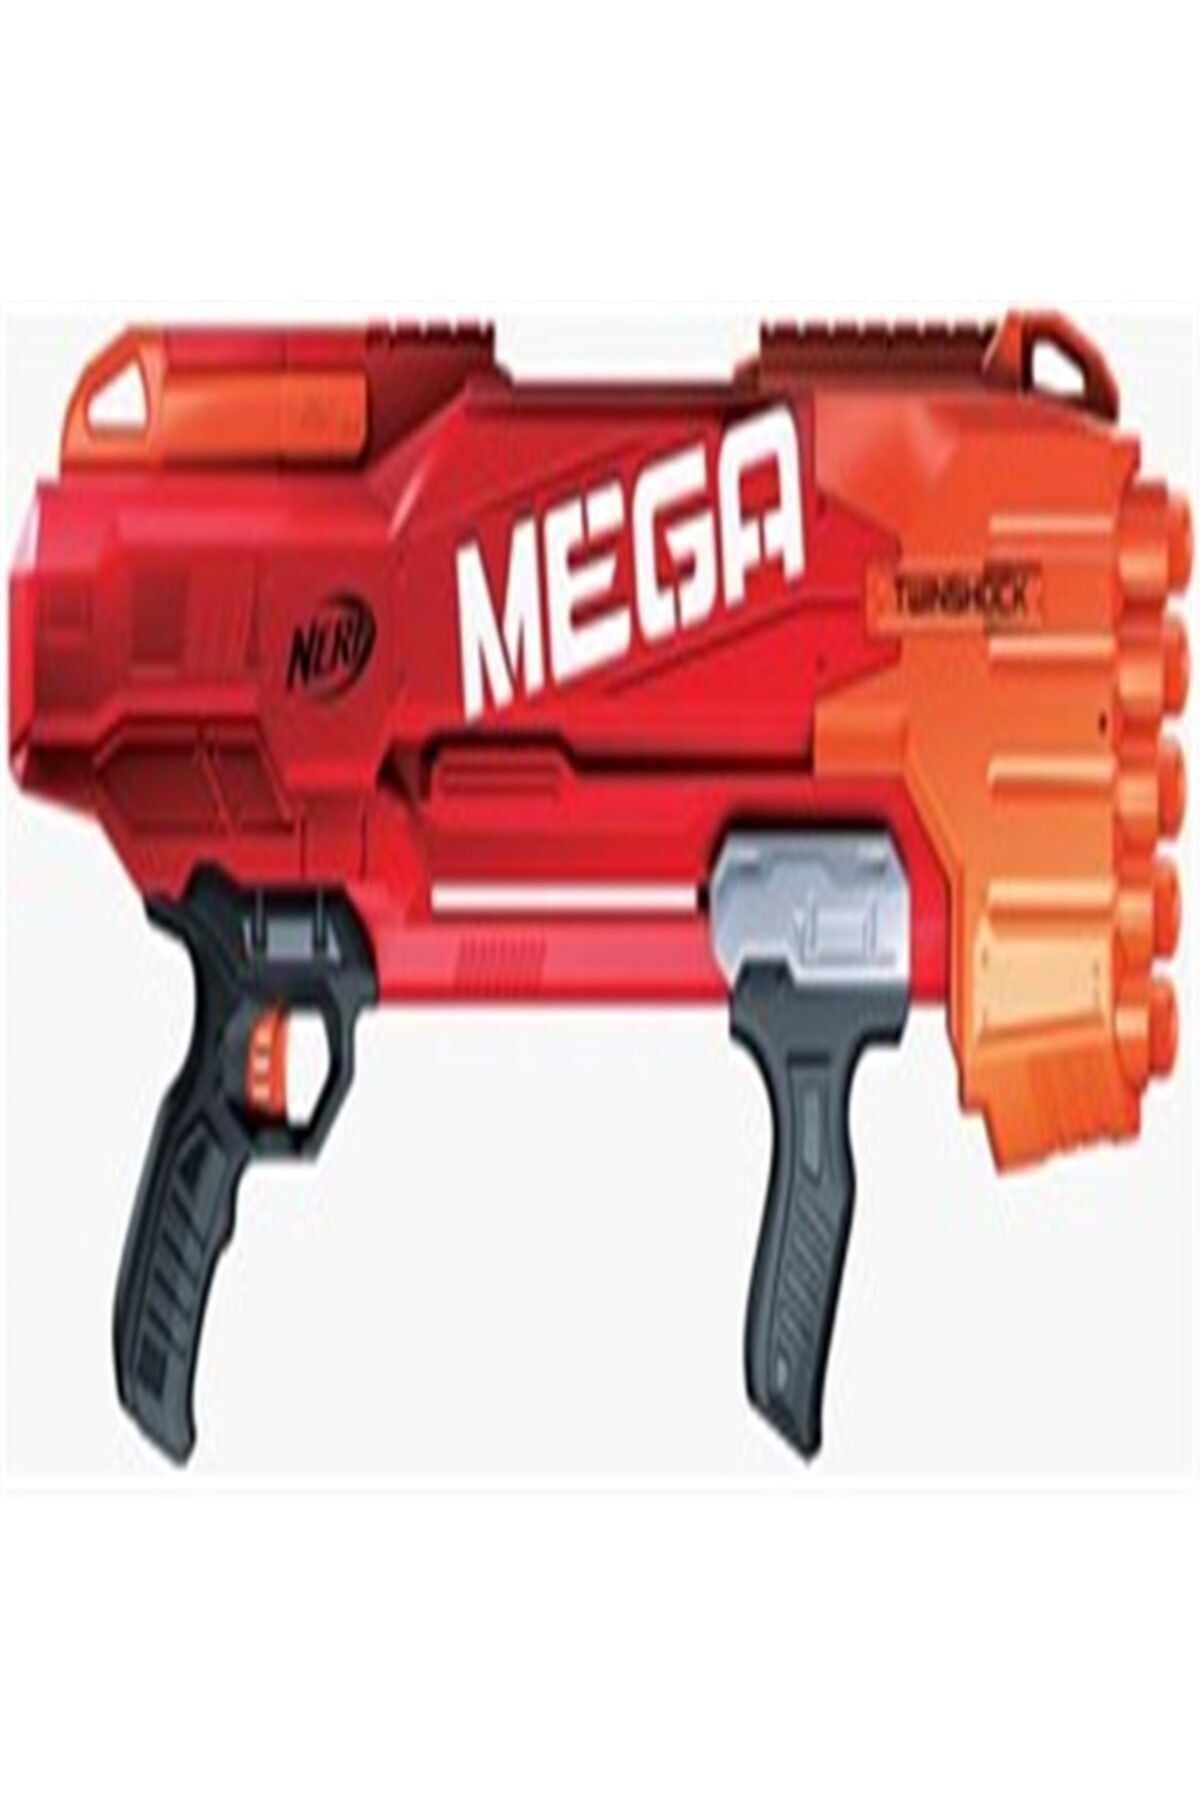 Arma De Brinquedo Nerf Mega Twinshock B9894